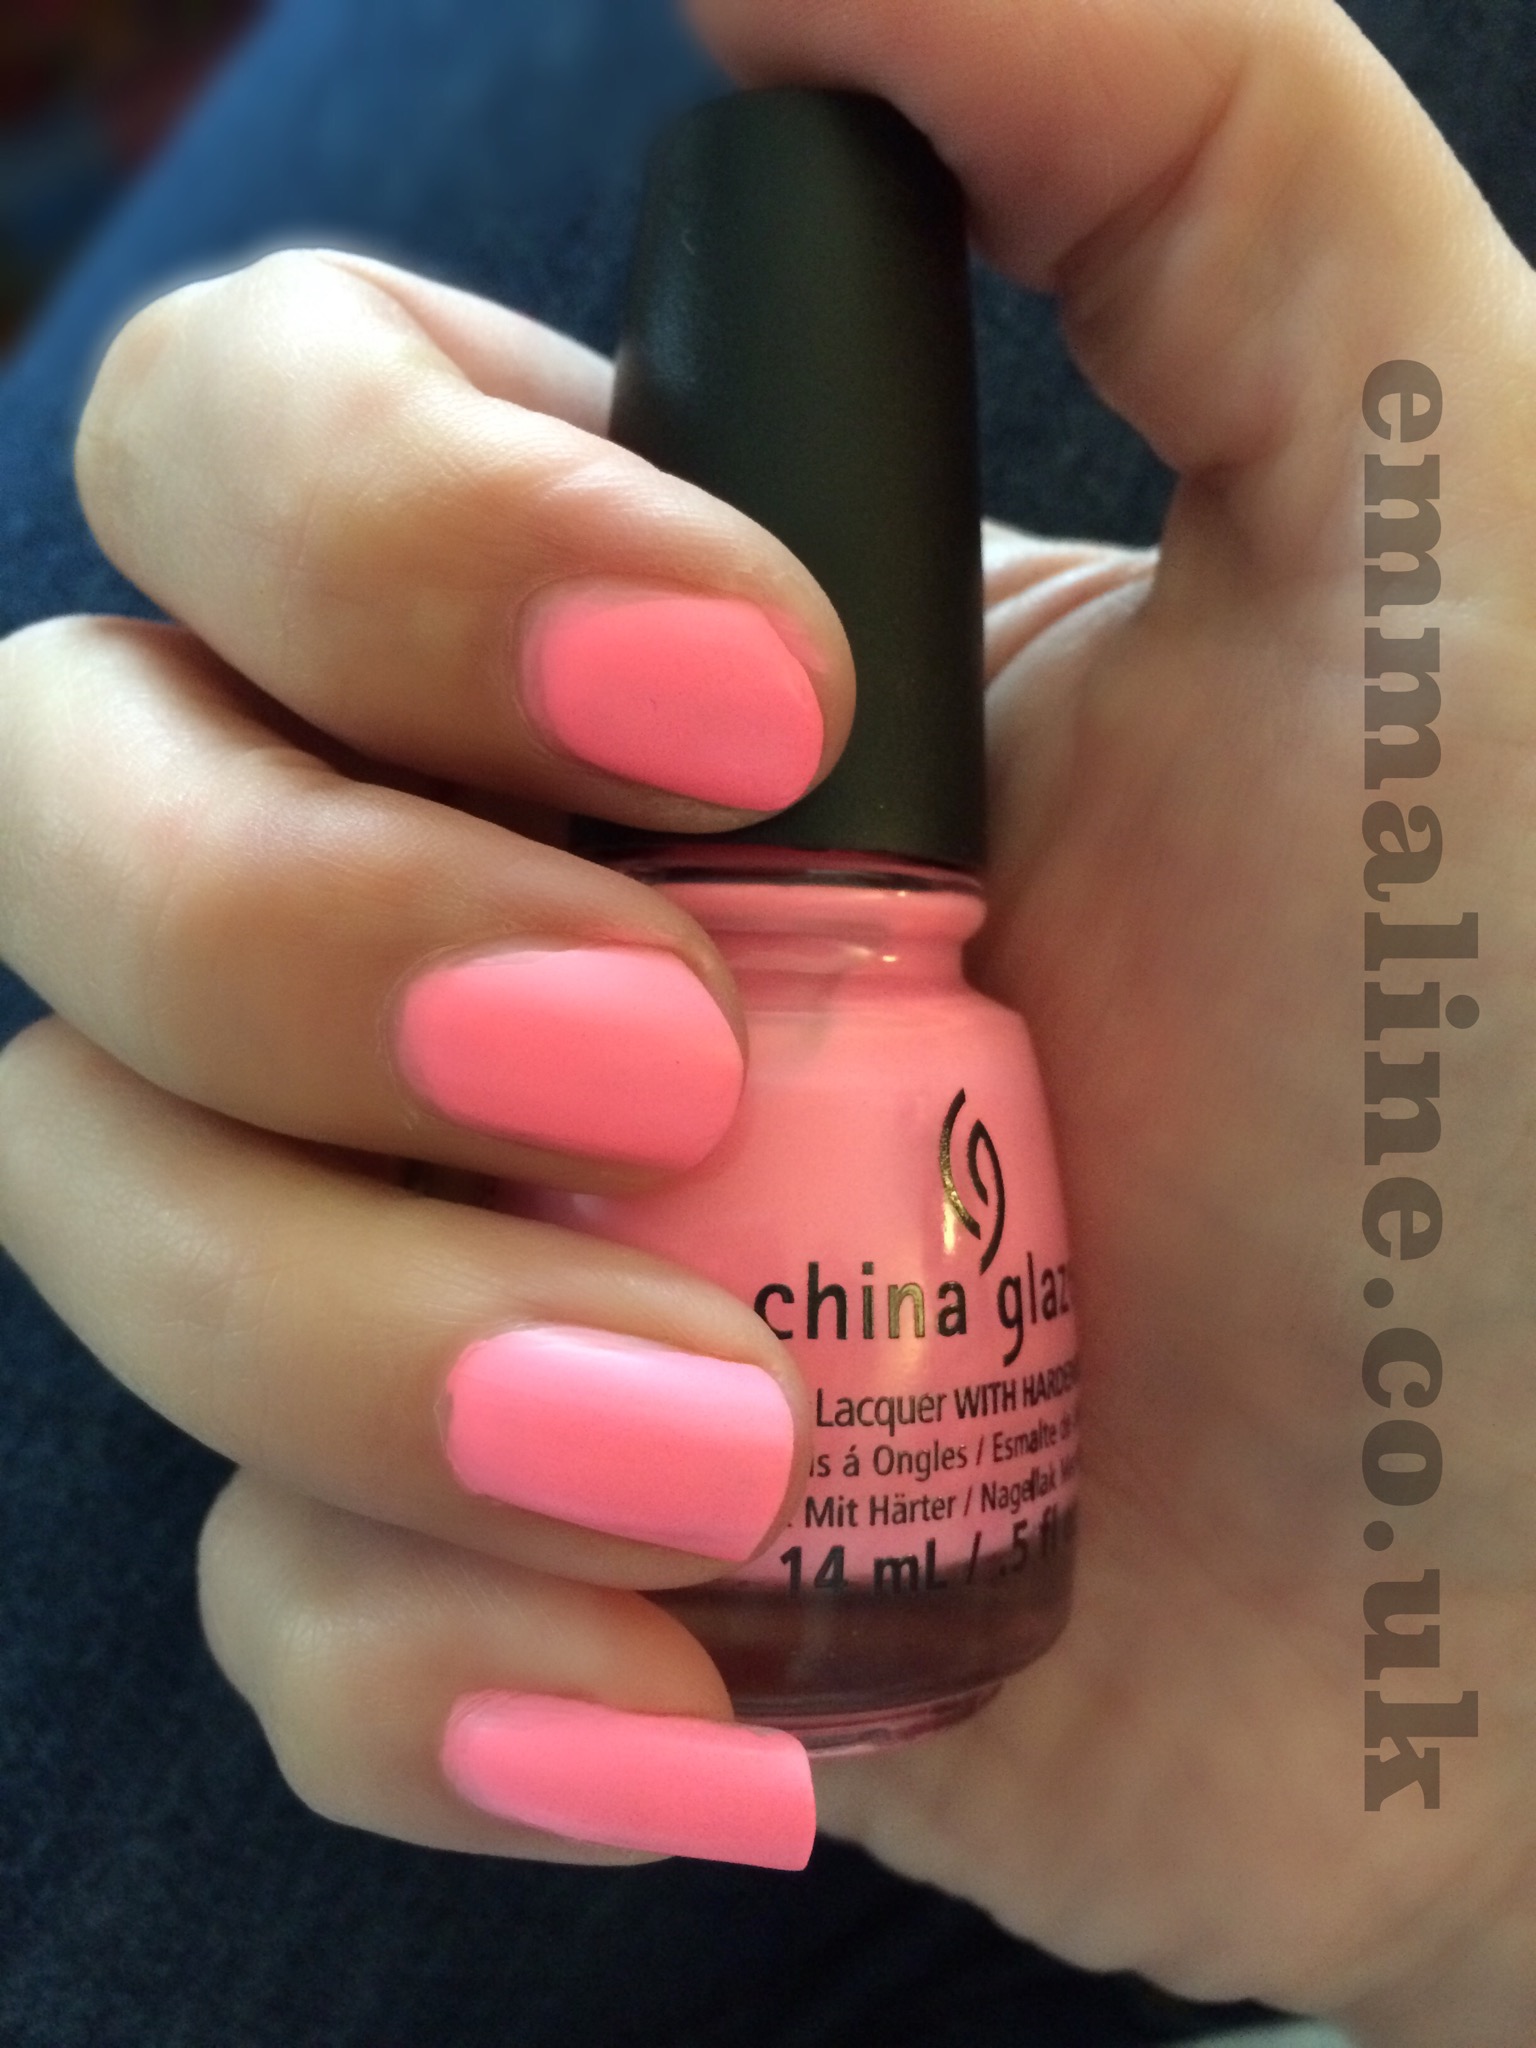 Pink China glaze nail varnish